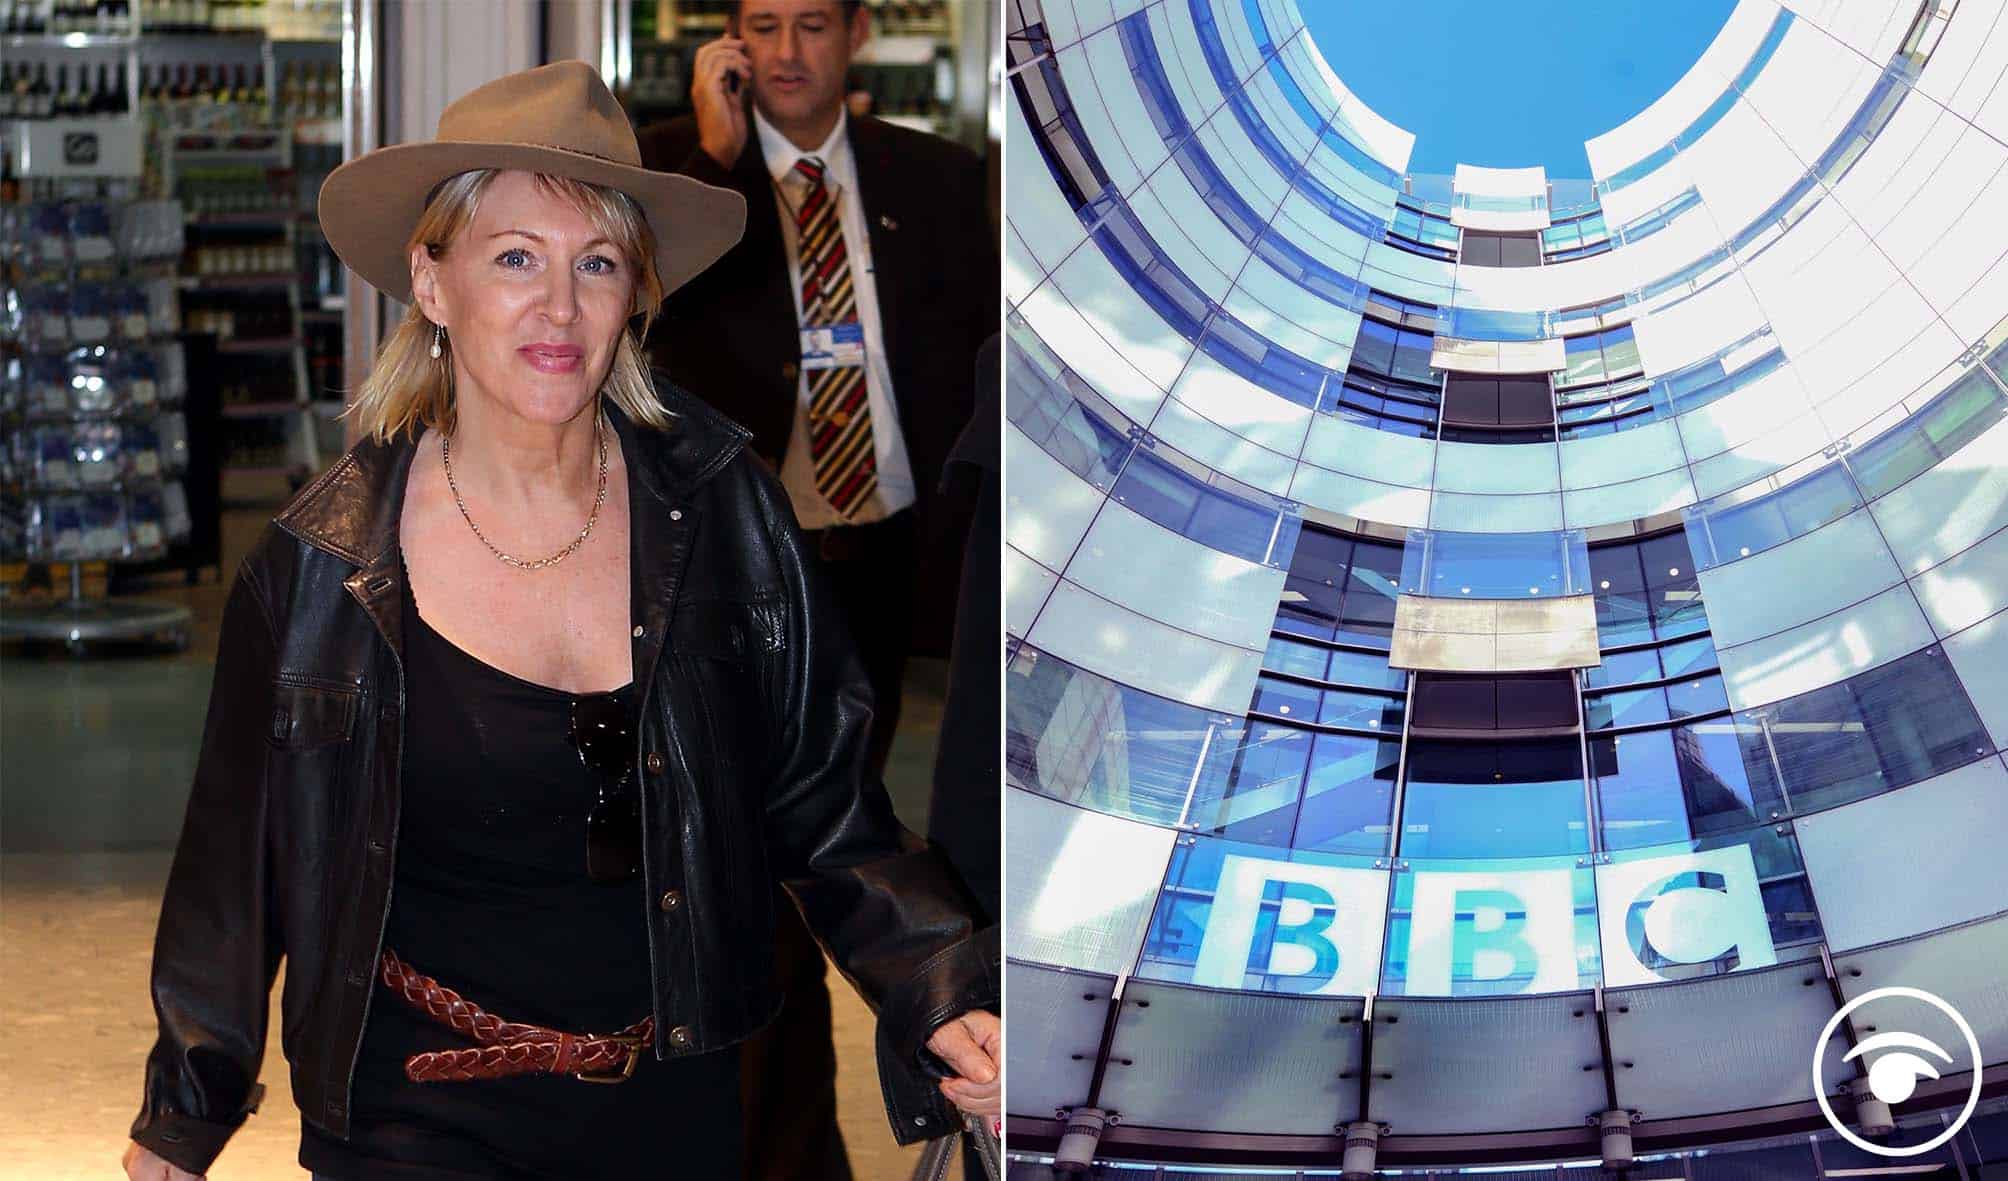 BBC staff put Nadine Dorries straight in damning thread